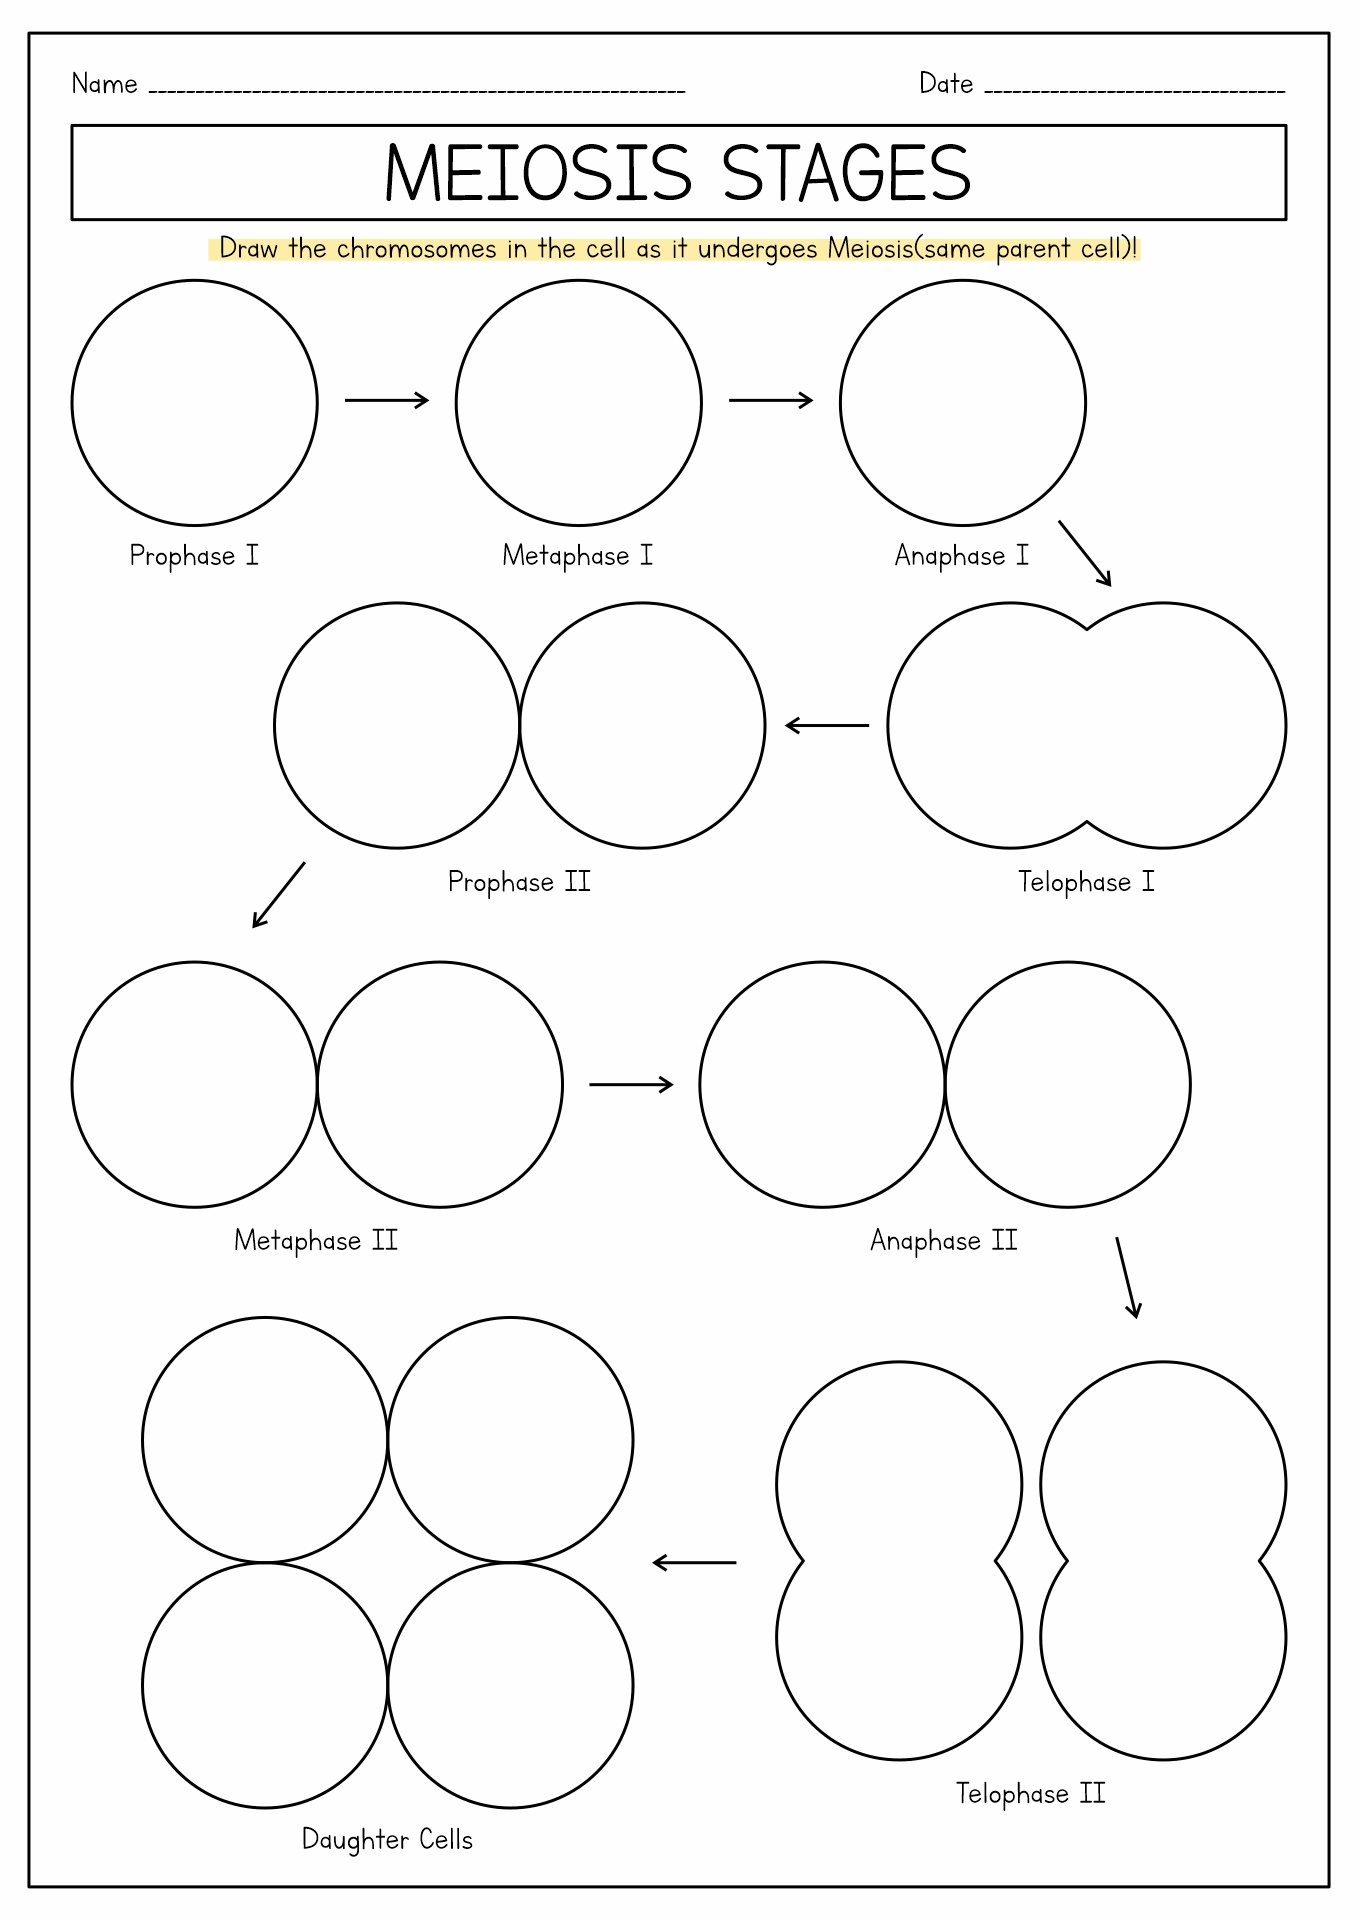 Meiosis Drawing Worksheet Image